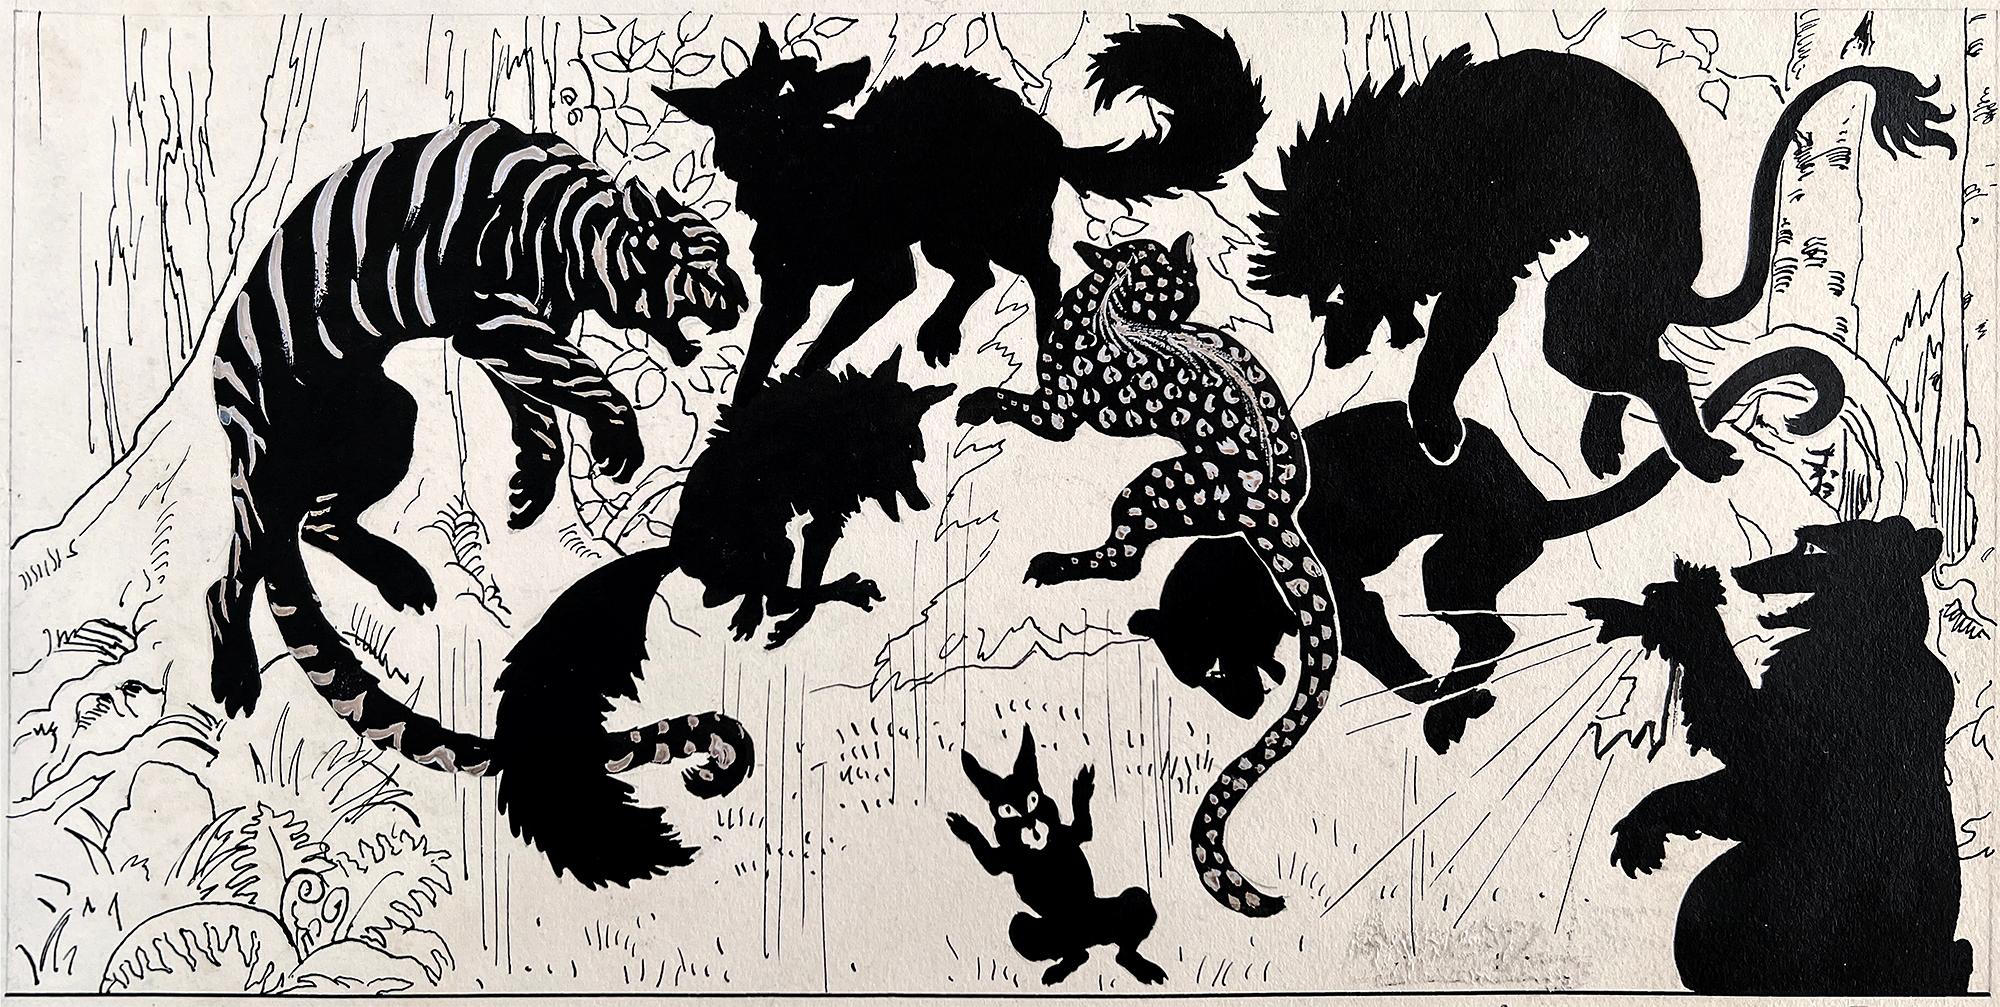 Die Pionierin und Illustratorin Margery Stocking Hart zeichnet eine Geschichte mit Feder und Tinte, die einen runden Tisch von Raubtieren zeigt, die ein verletzliches Kaninchen umzingeln.   Auf der zweiten Tafel stürzen die Räuber, und das Kaninchen